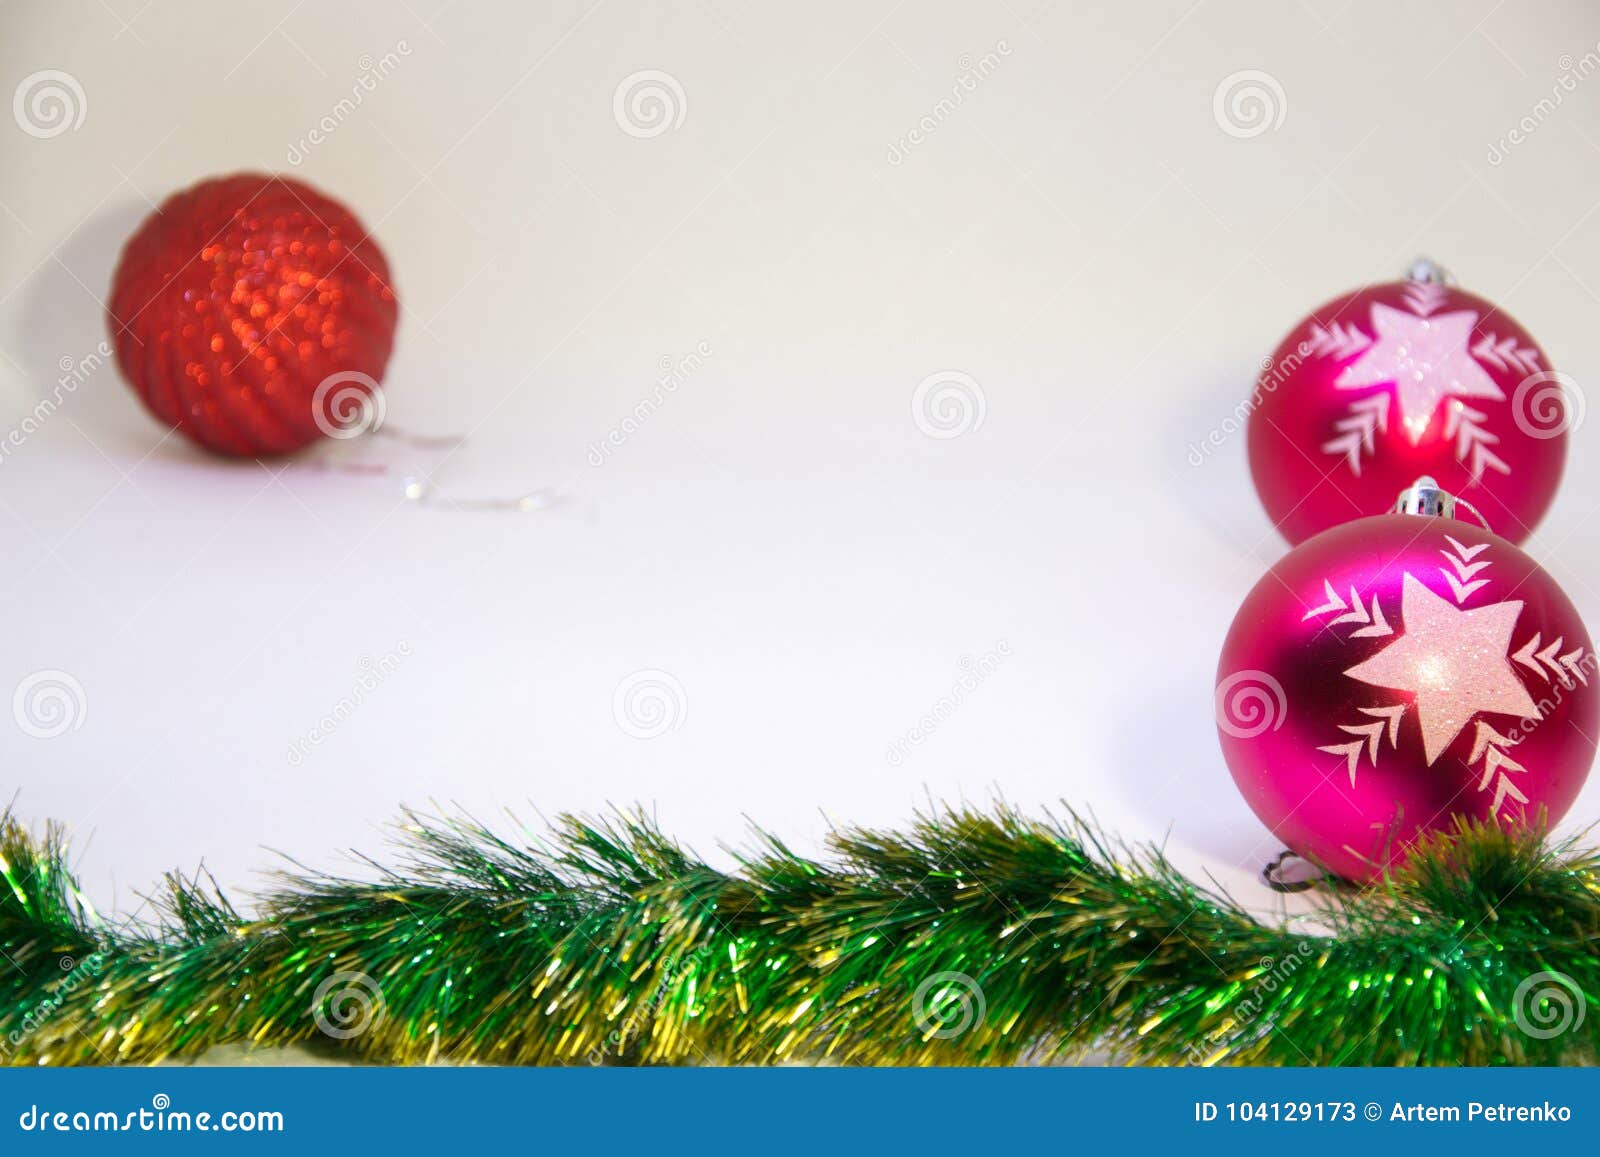 Decorazione di rosso e due palle rosa di natale e di Natale su un fondo bianco. Festivo, cartolina di Natale, palla rossa, due palle rosa e decorazioni di Natale su un fondo bianco, fondo di natale